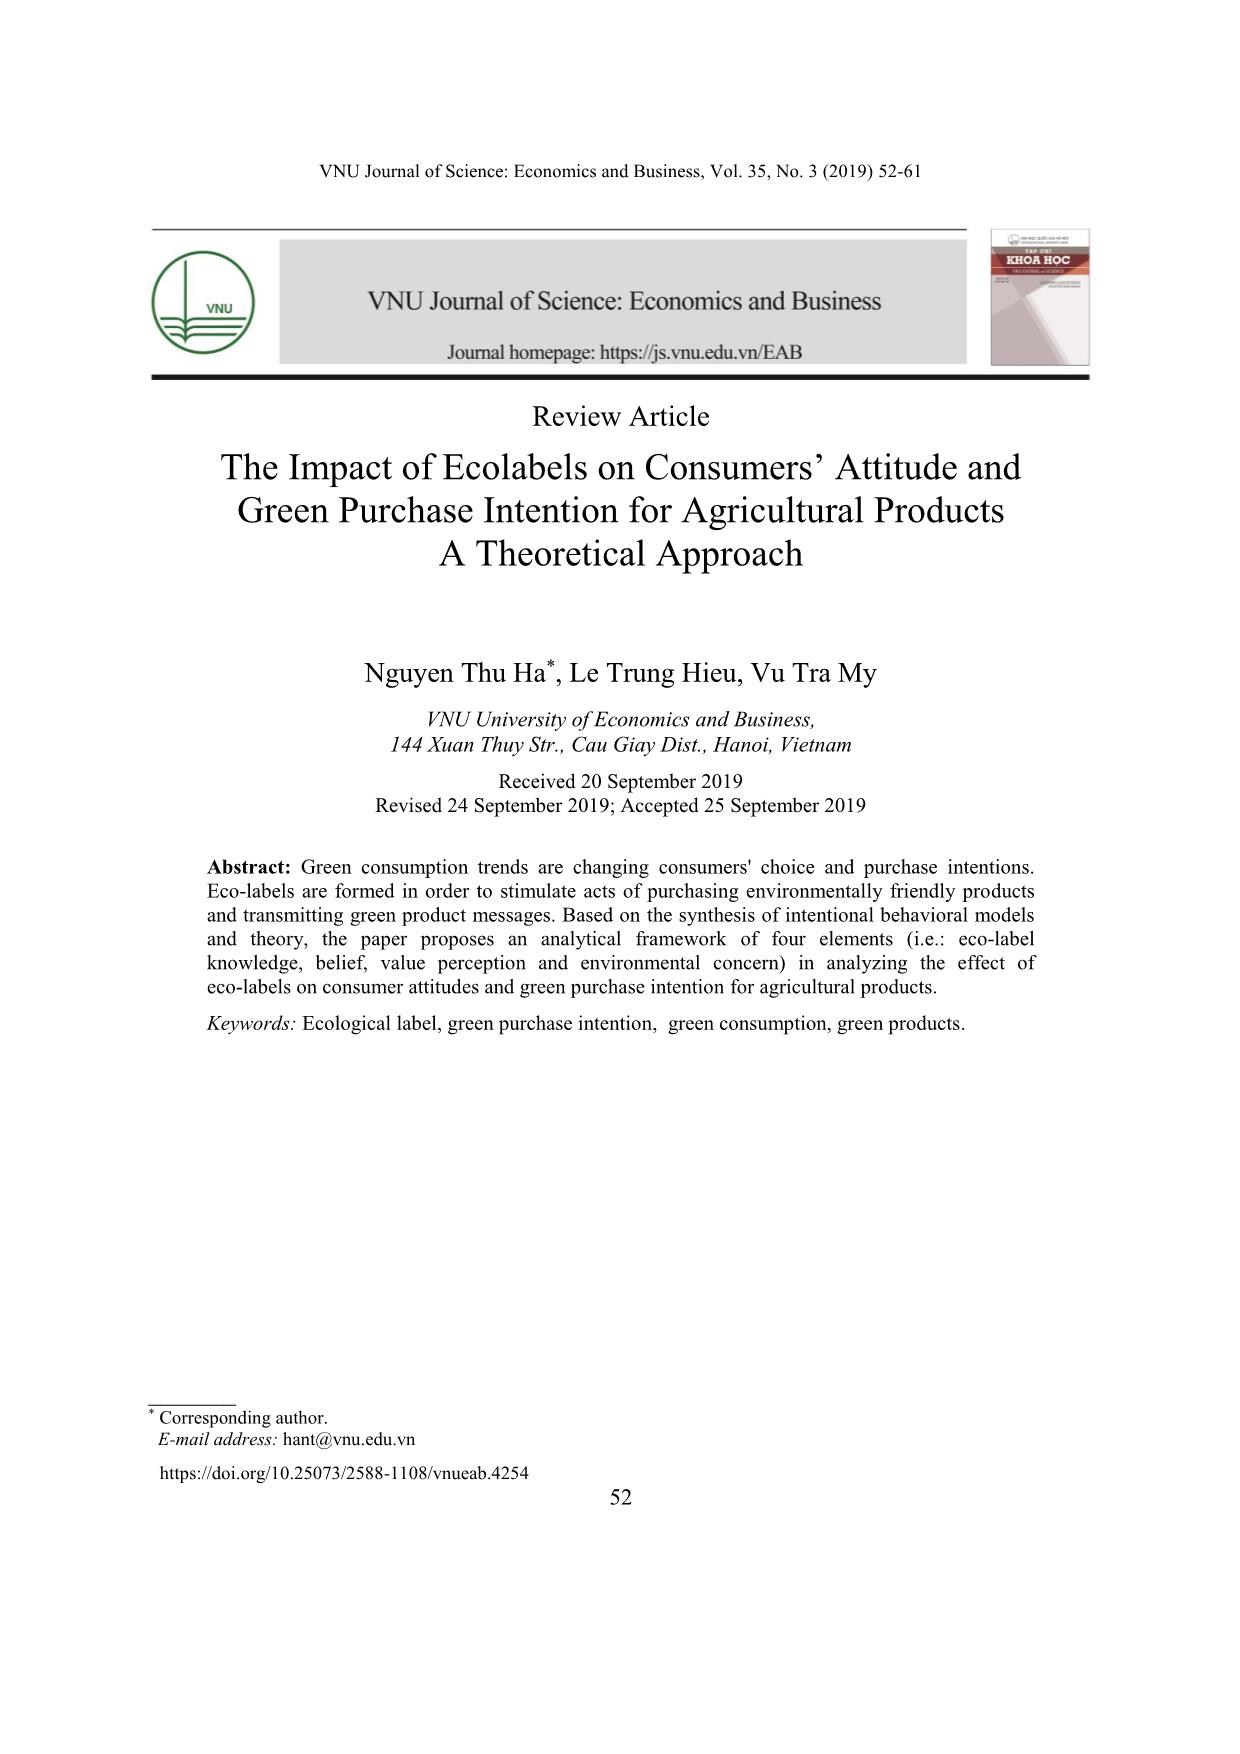 Ảnh hưởng của nhãn sinh thái tới thái độ và ý định mua xanh sản phẩm nông nghiệp: Nghiên cứu lý thuyết trang 1